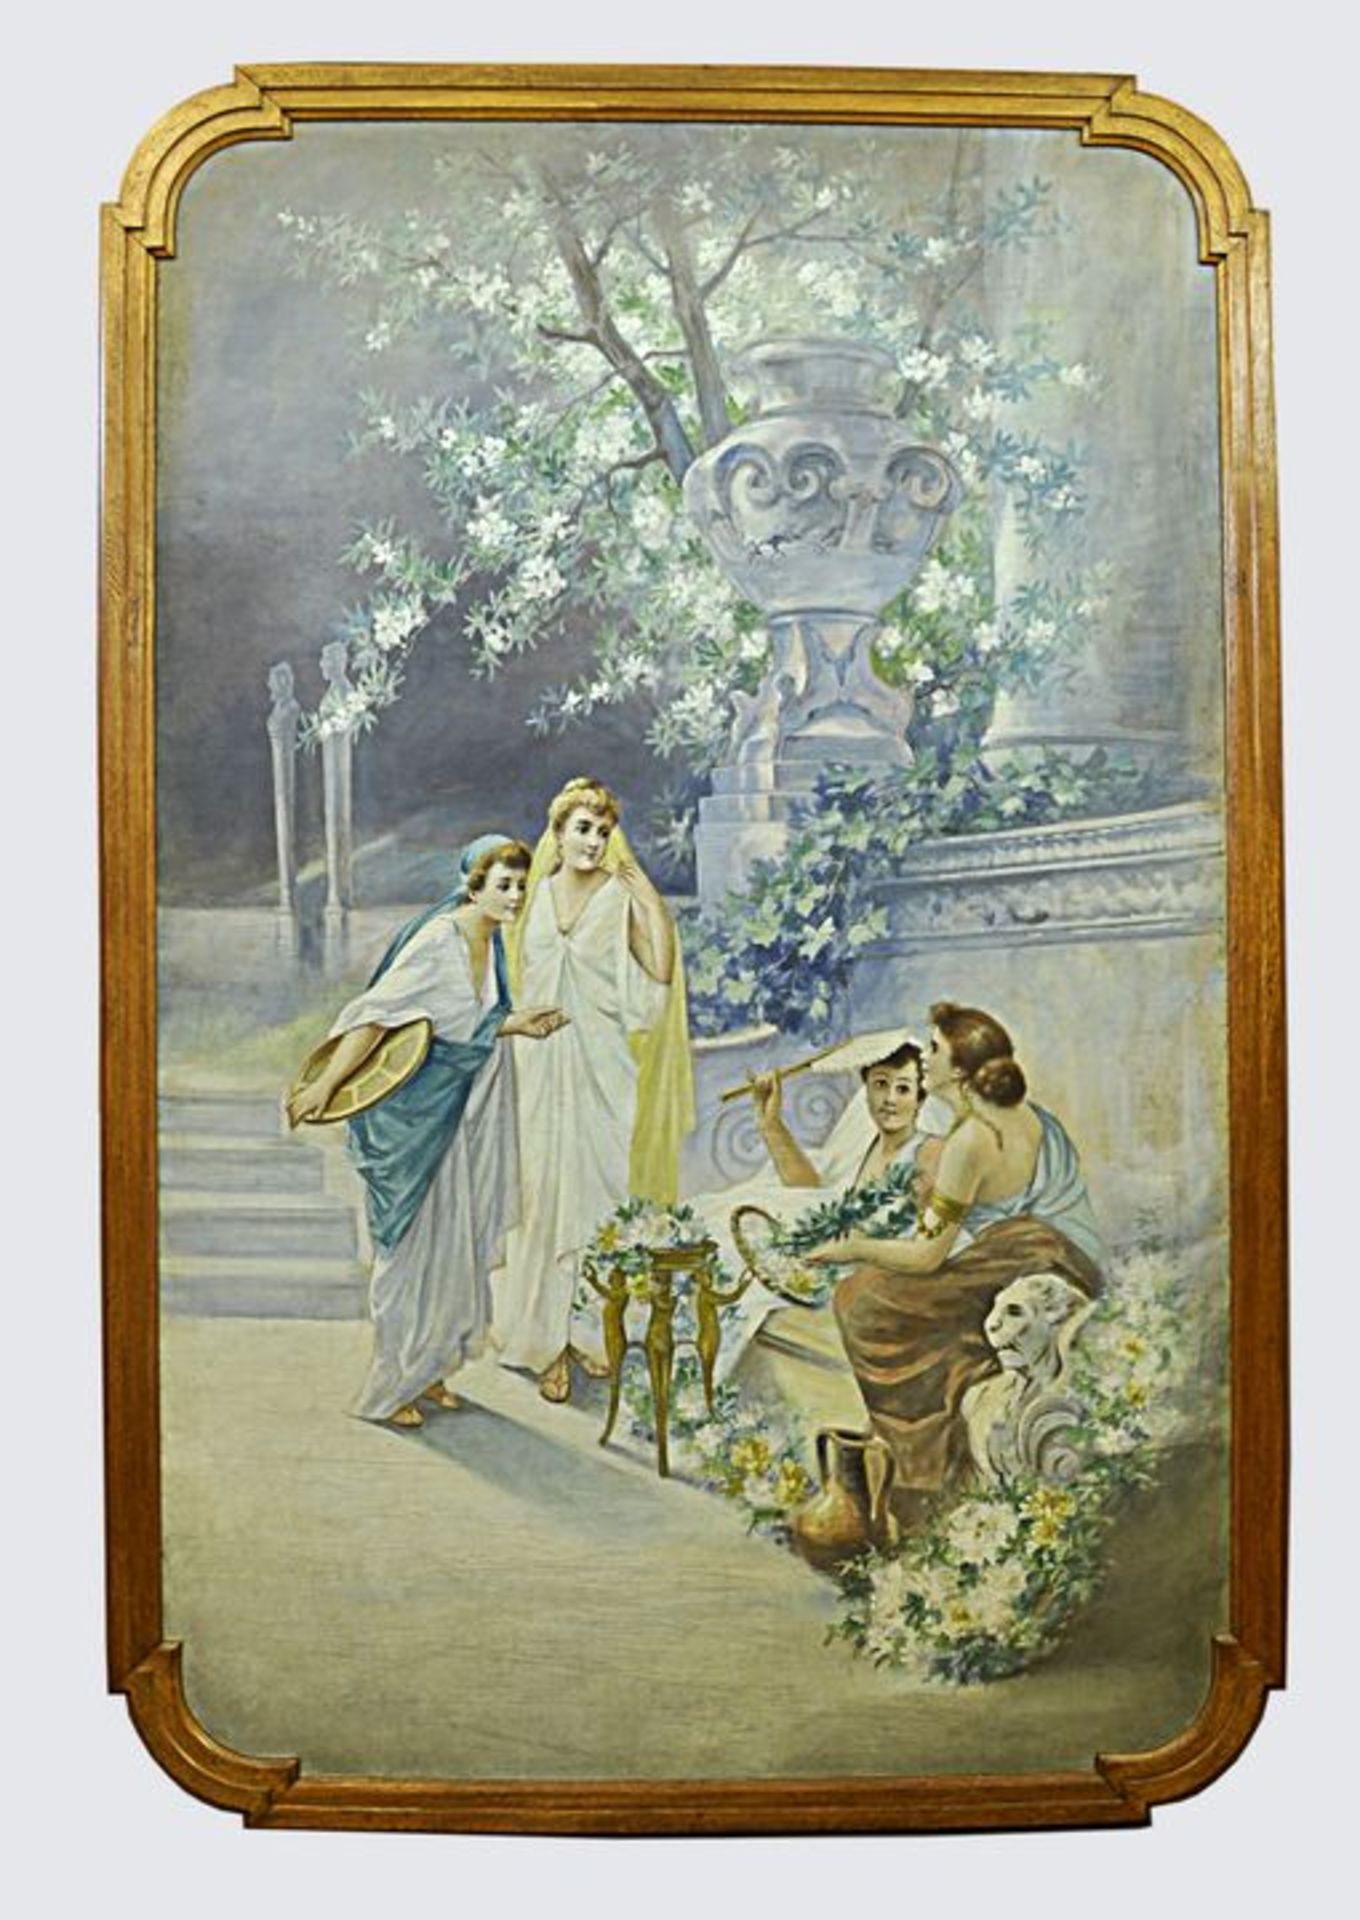 Dekorationsmaler unsign. Gemälde "Drei Frauen" / unknown